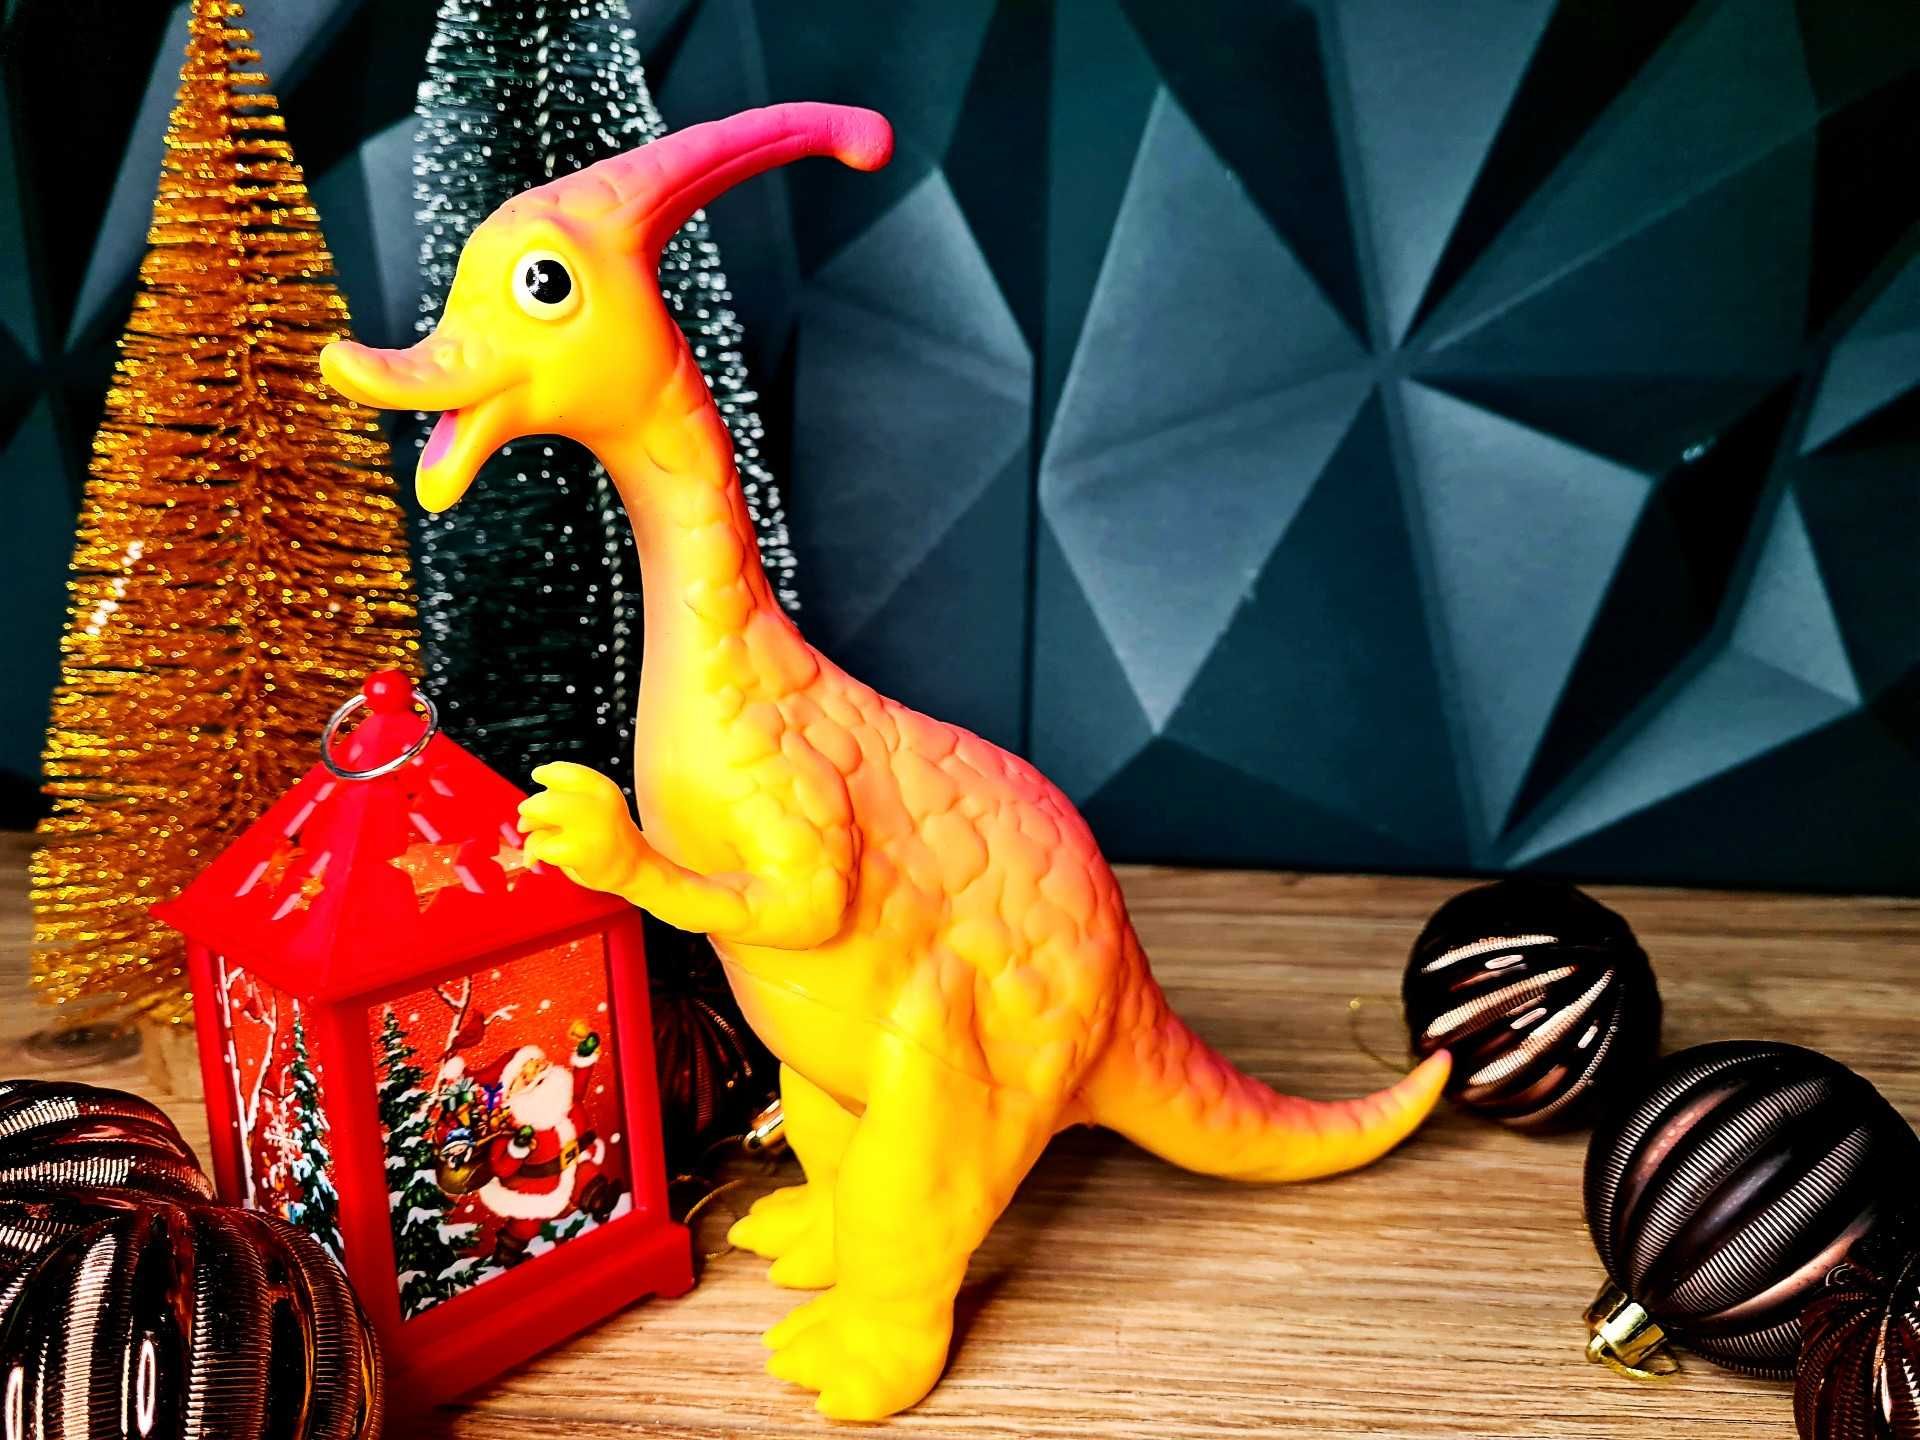 Zabawka Gumowa Dinozaur nowa dla dzieci